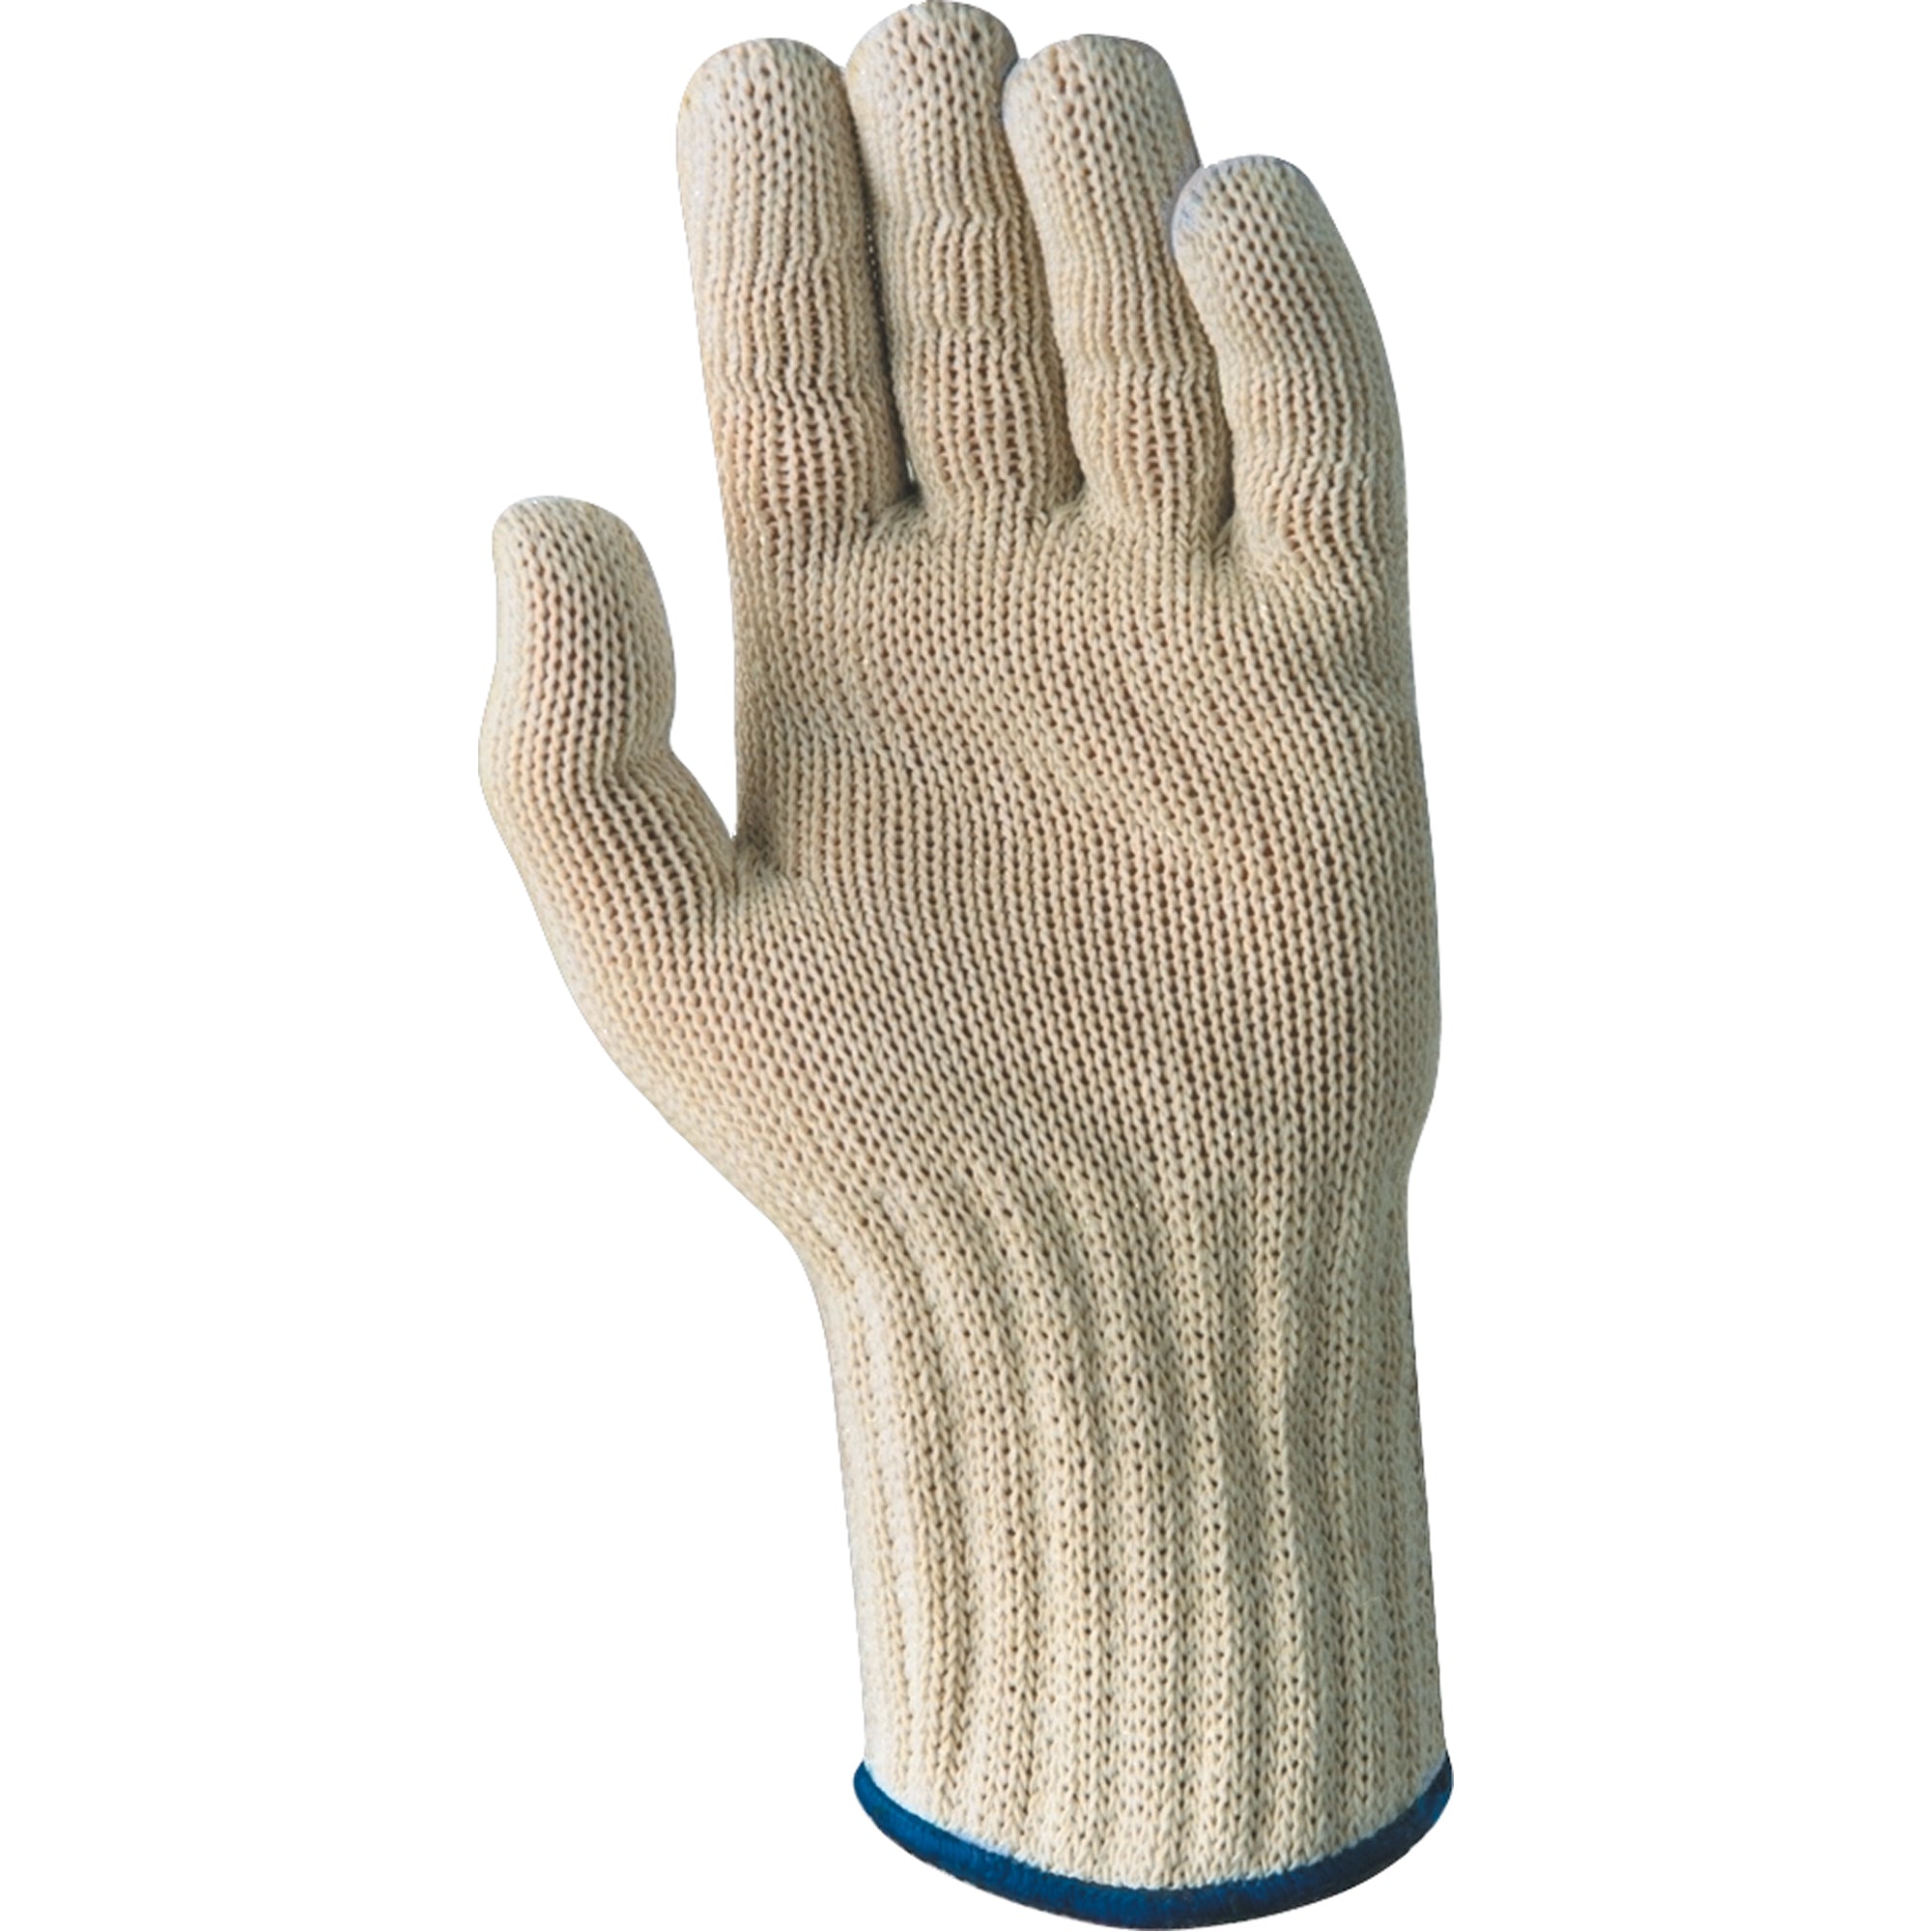 Whizard Glove